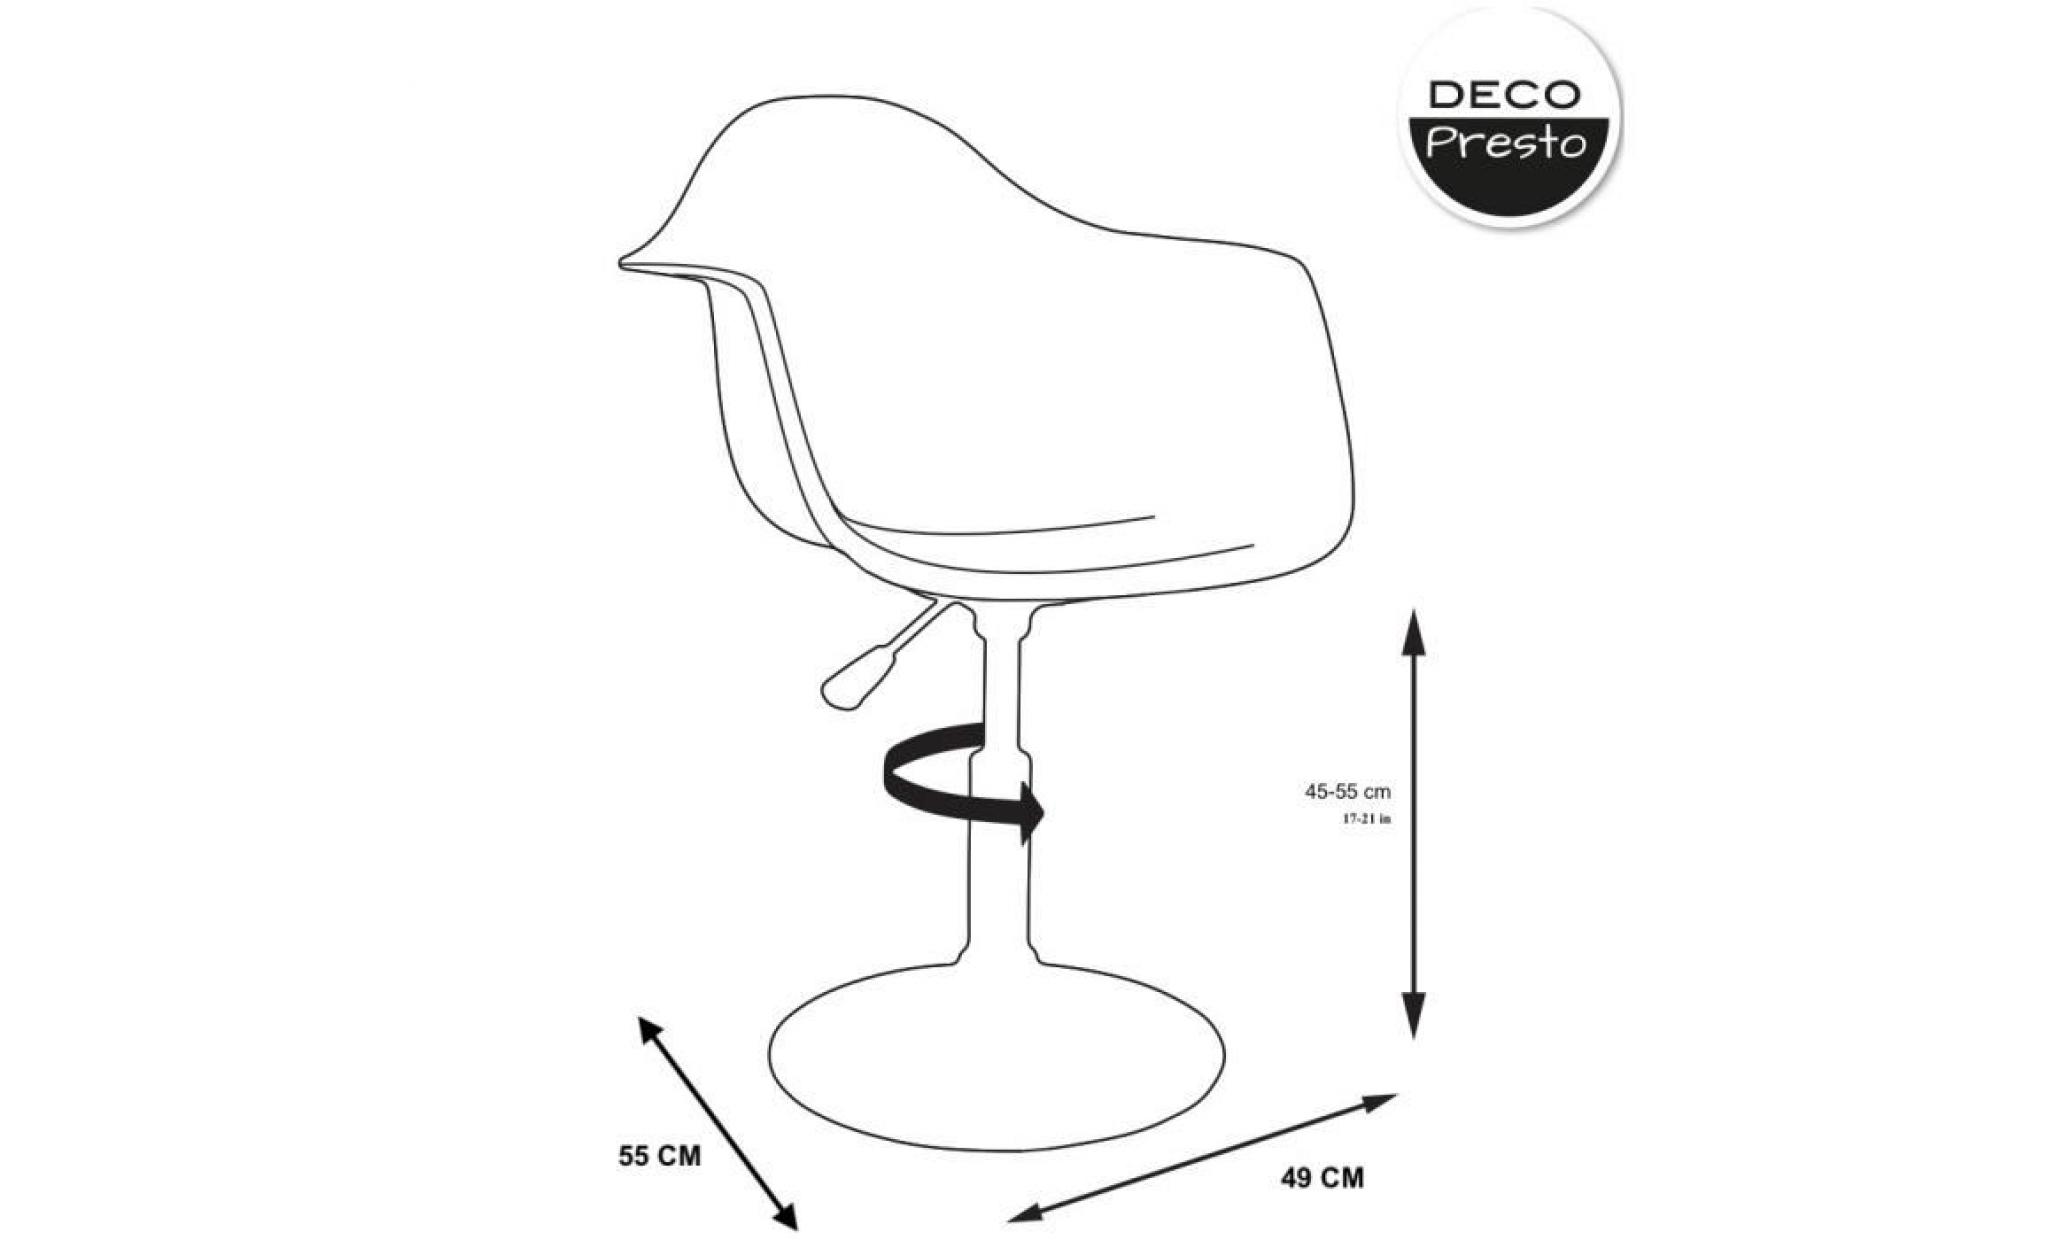 1 x fauteuil design  scandinave reglable pivotant  blanc pieds: acier chrome decopresto dp dai wh 1 pas cher